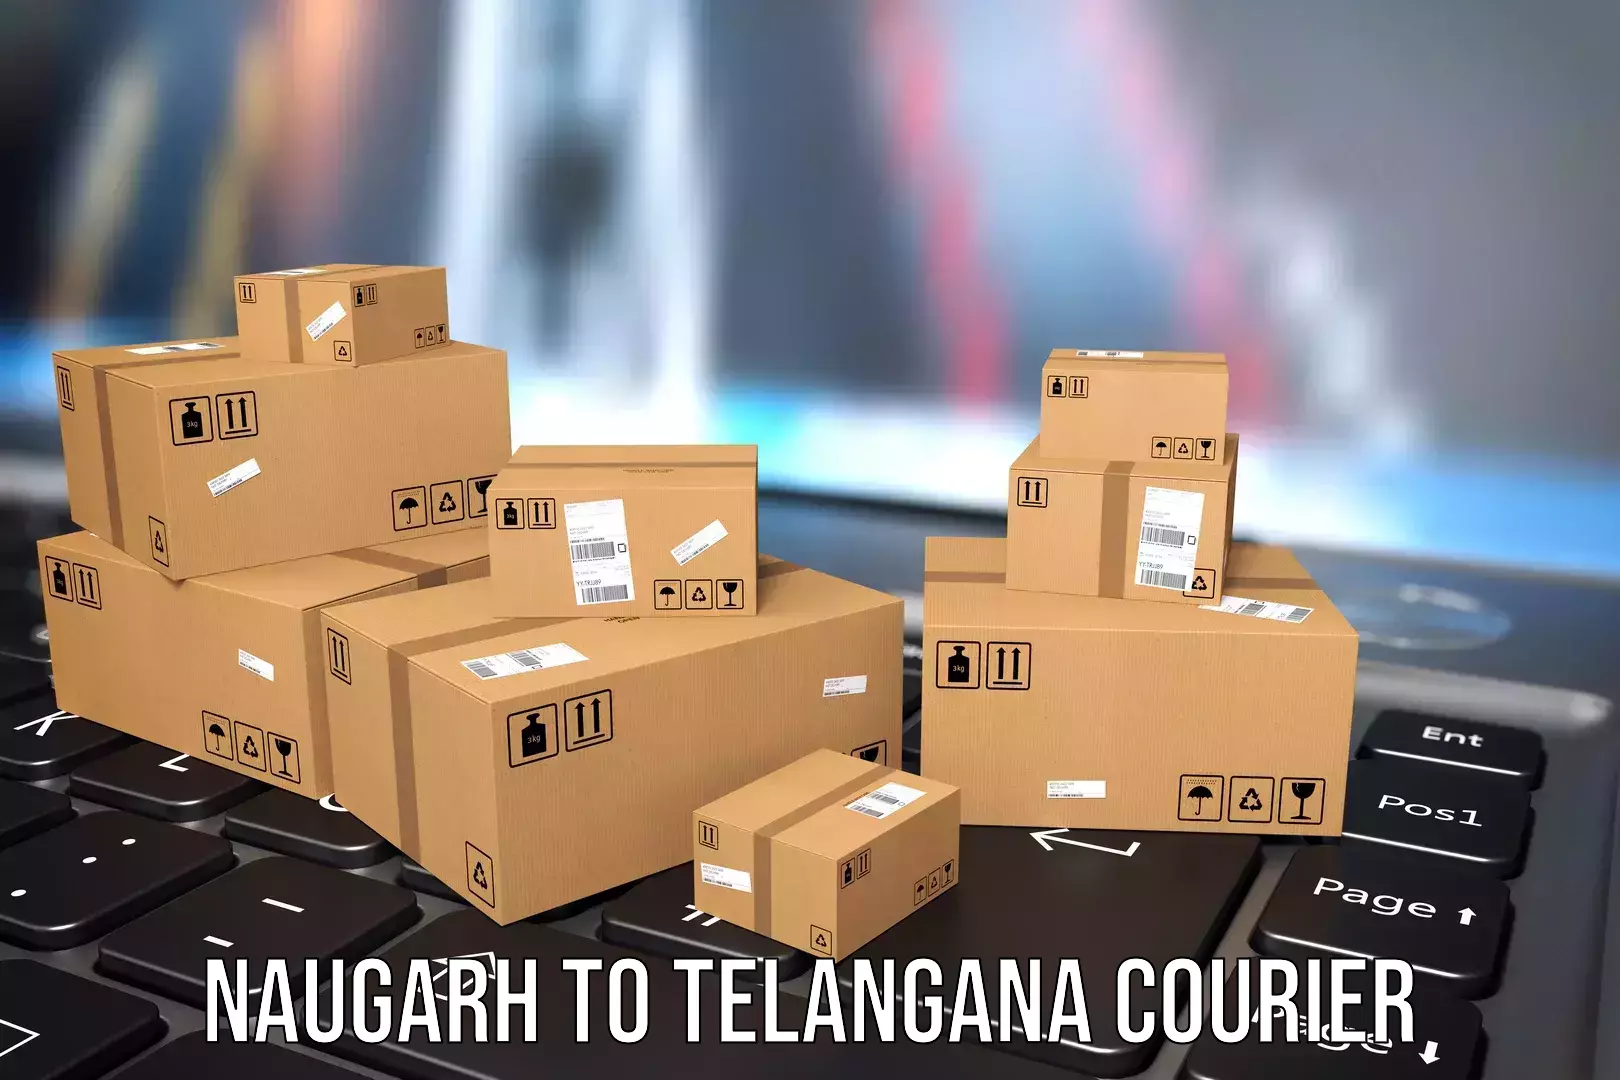 Baggage transport scheduler Naugarh to Telangana